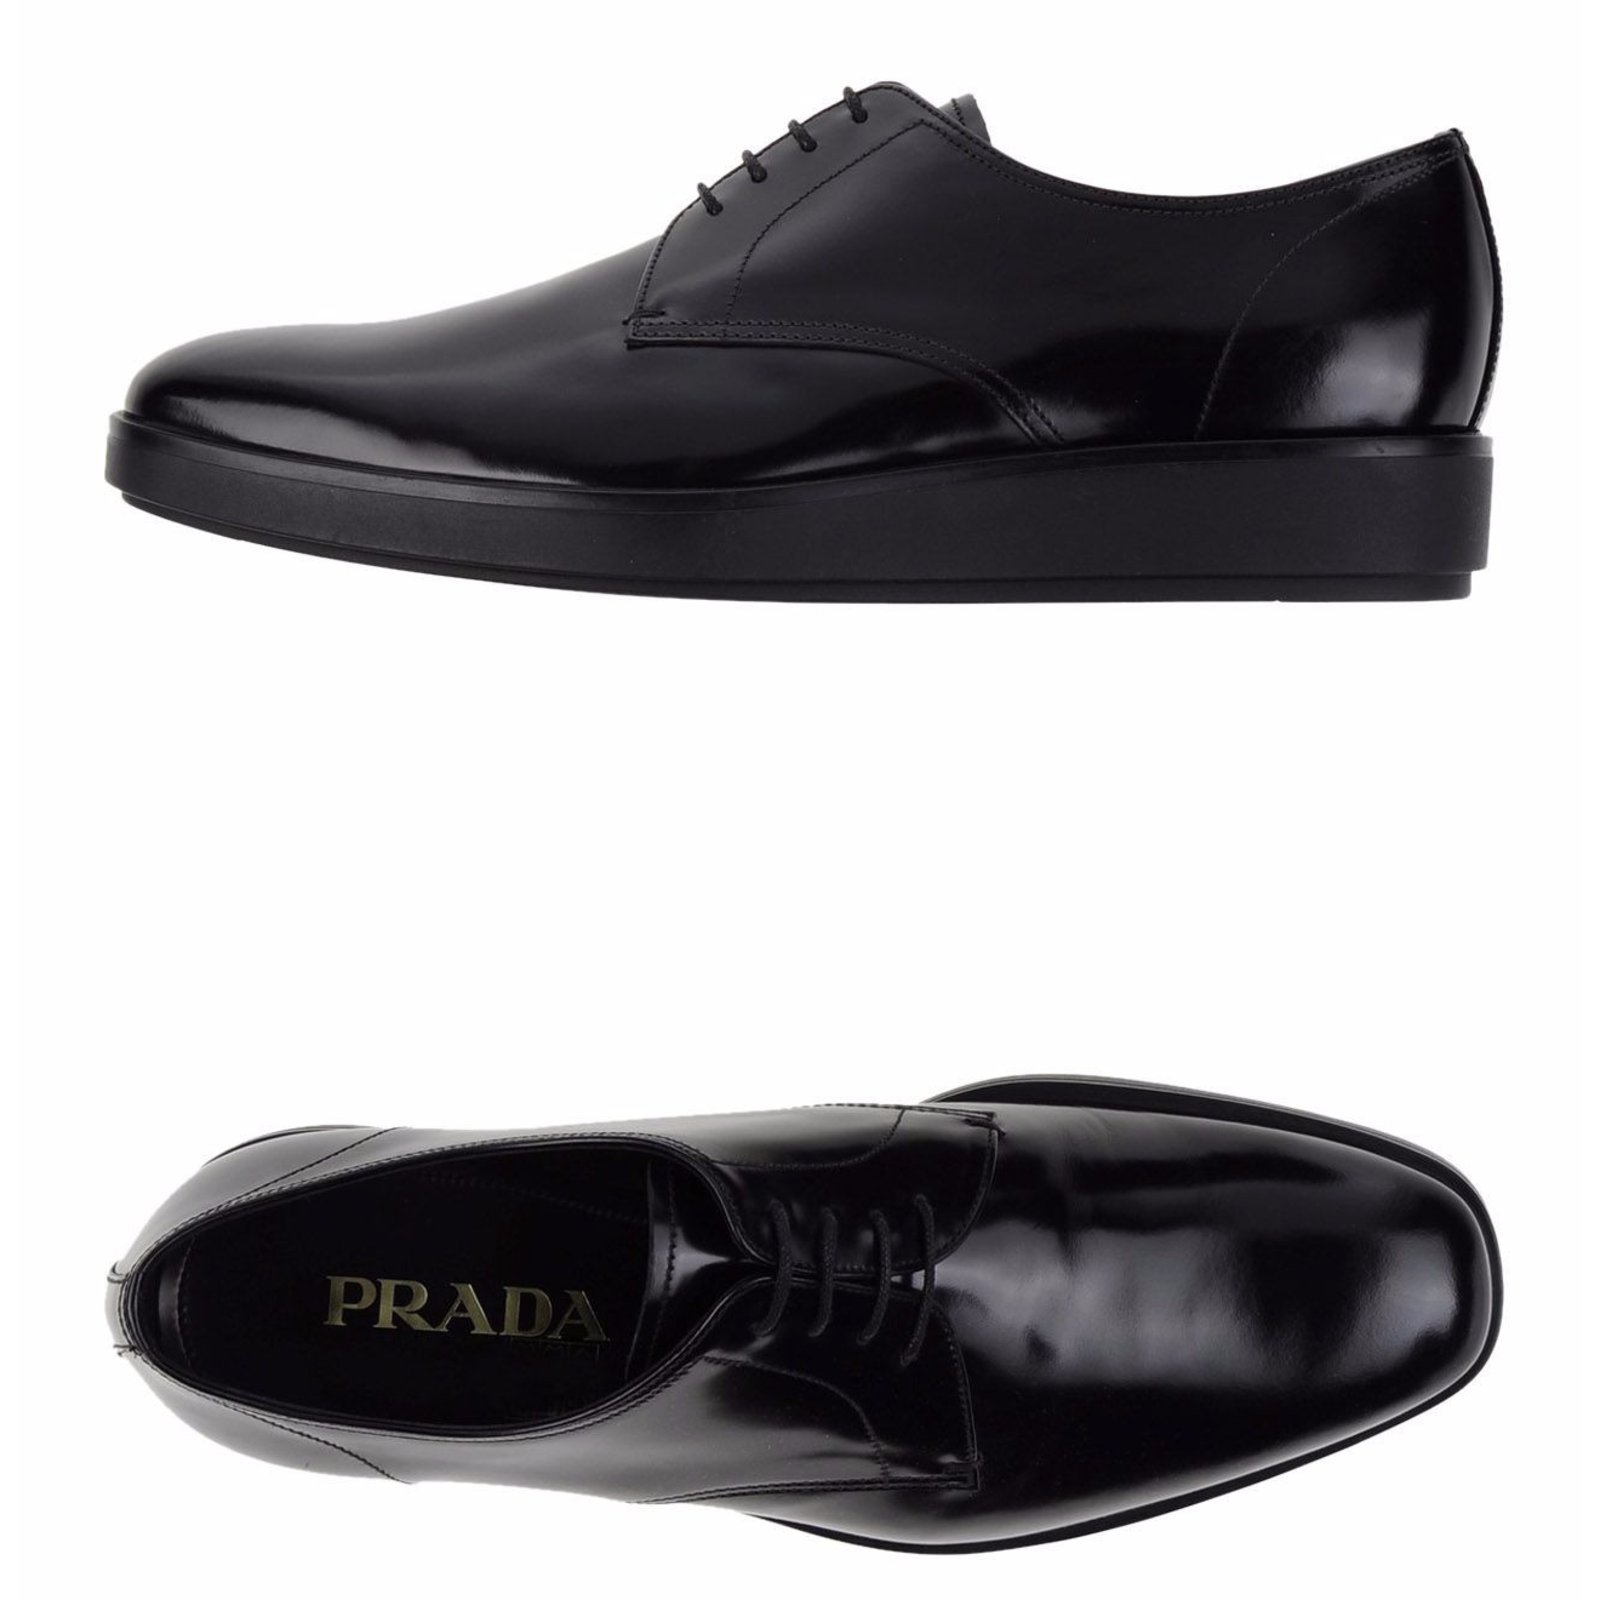 prada mens shoes black